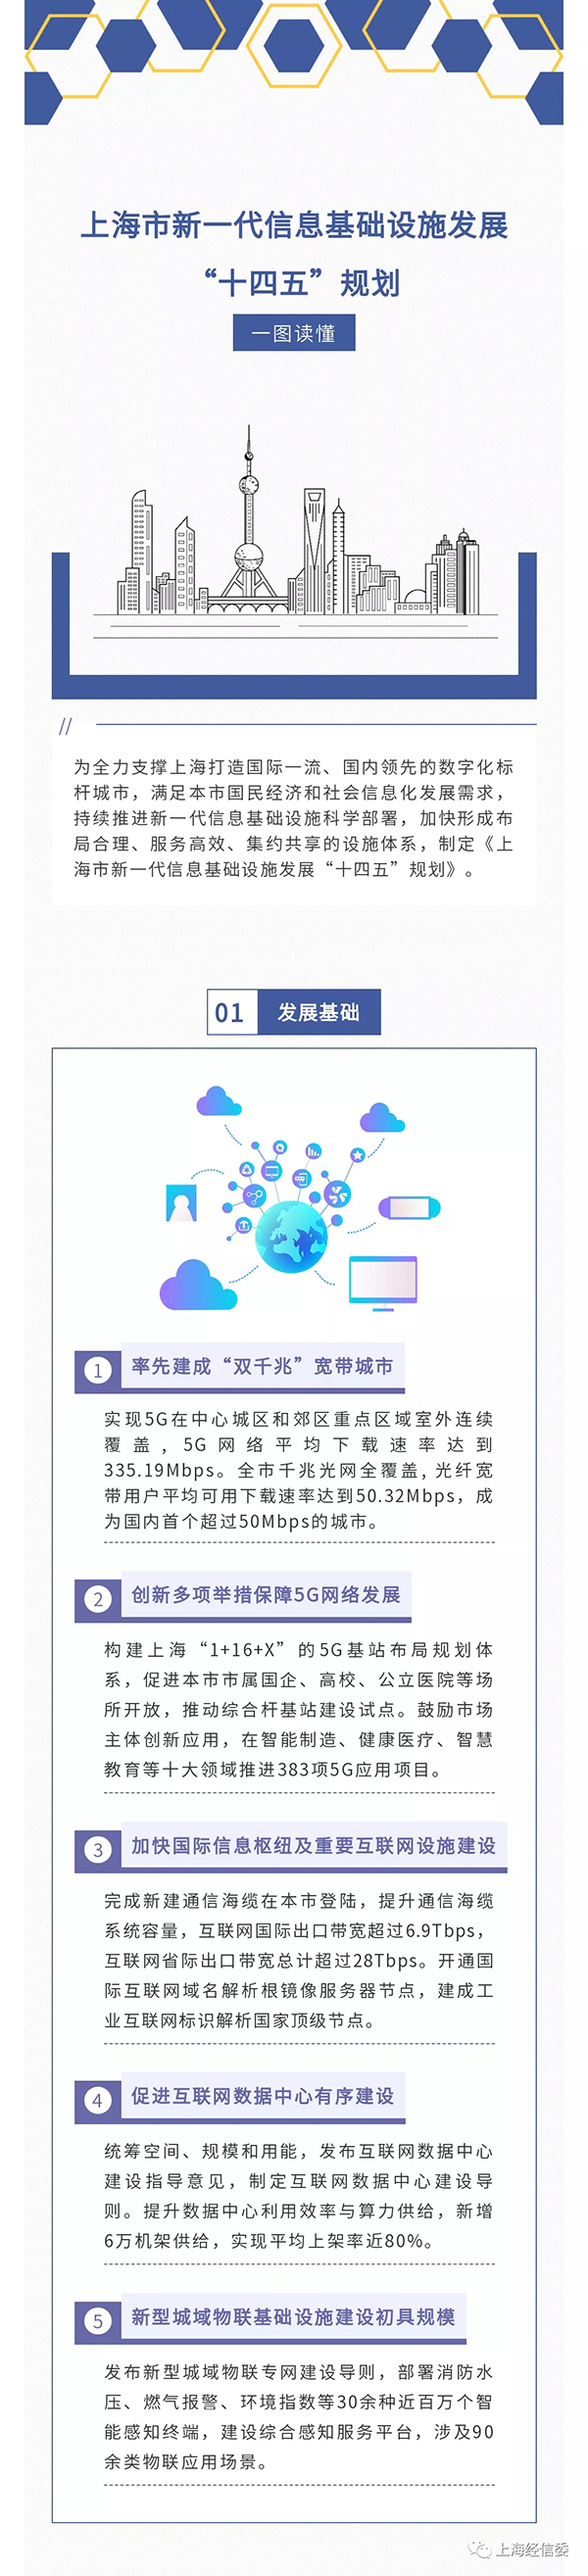 上海市新一代信息基础设施发展“十四五”规划